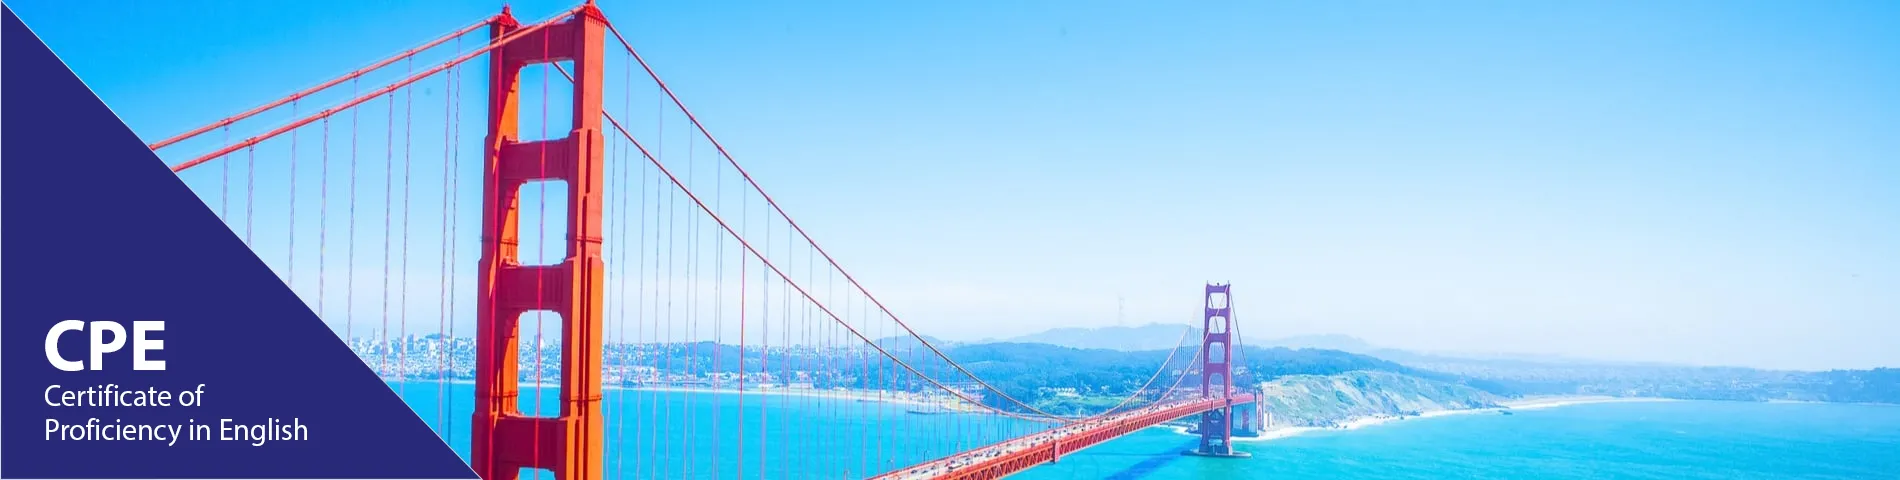 سان فرانسيسكو - CPE شهادة كامبريدج الكفاءة